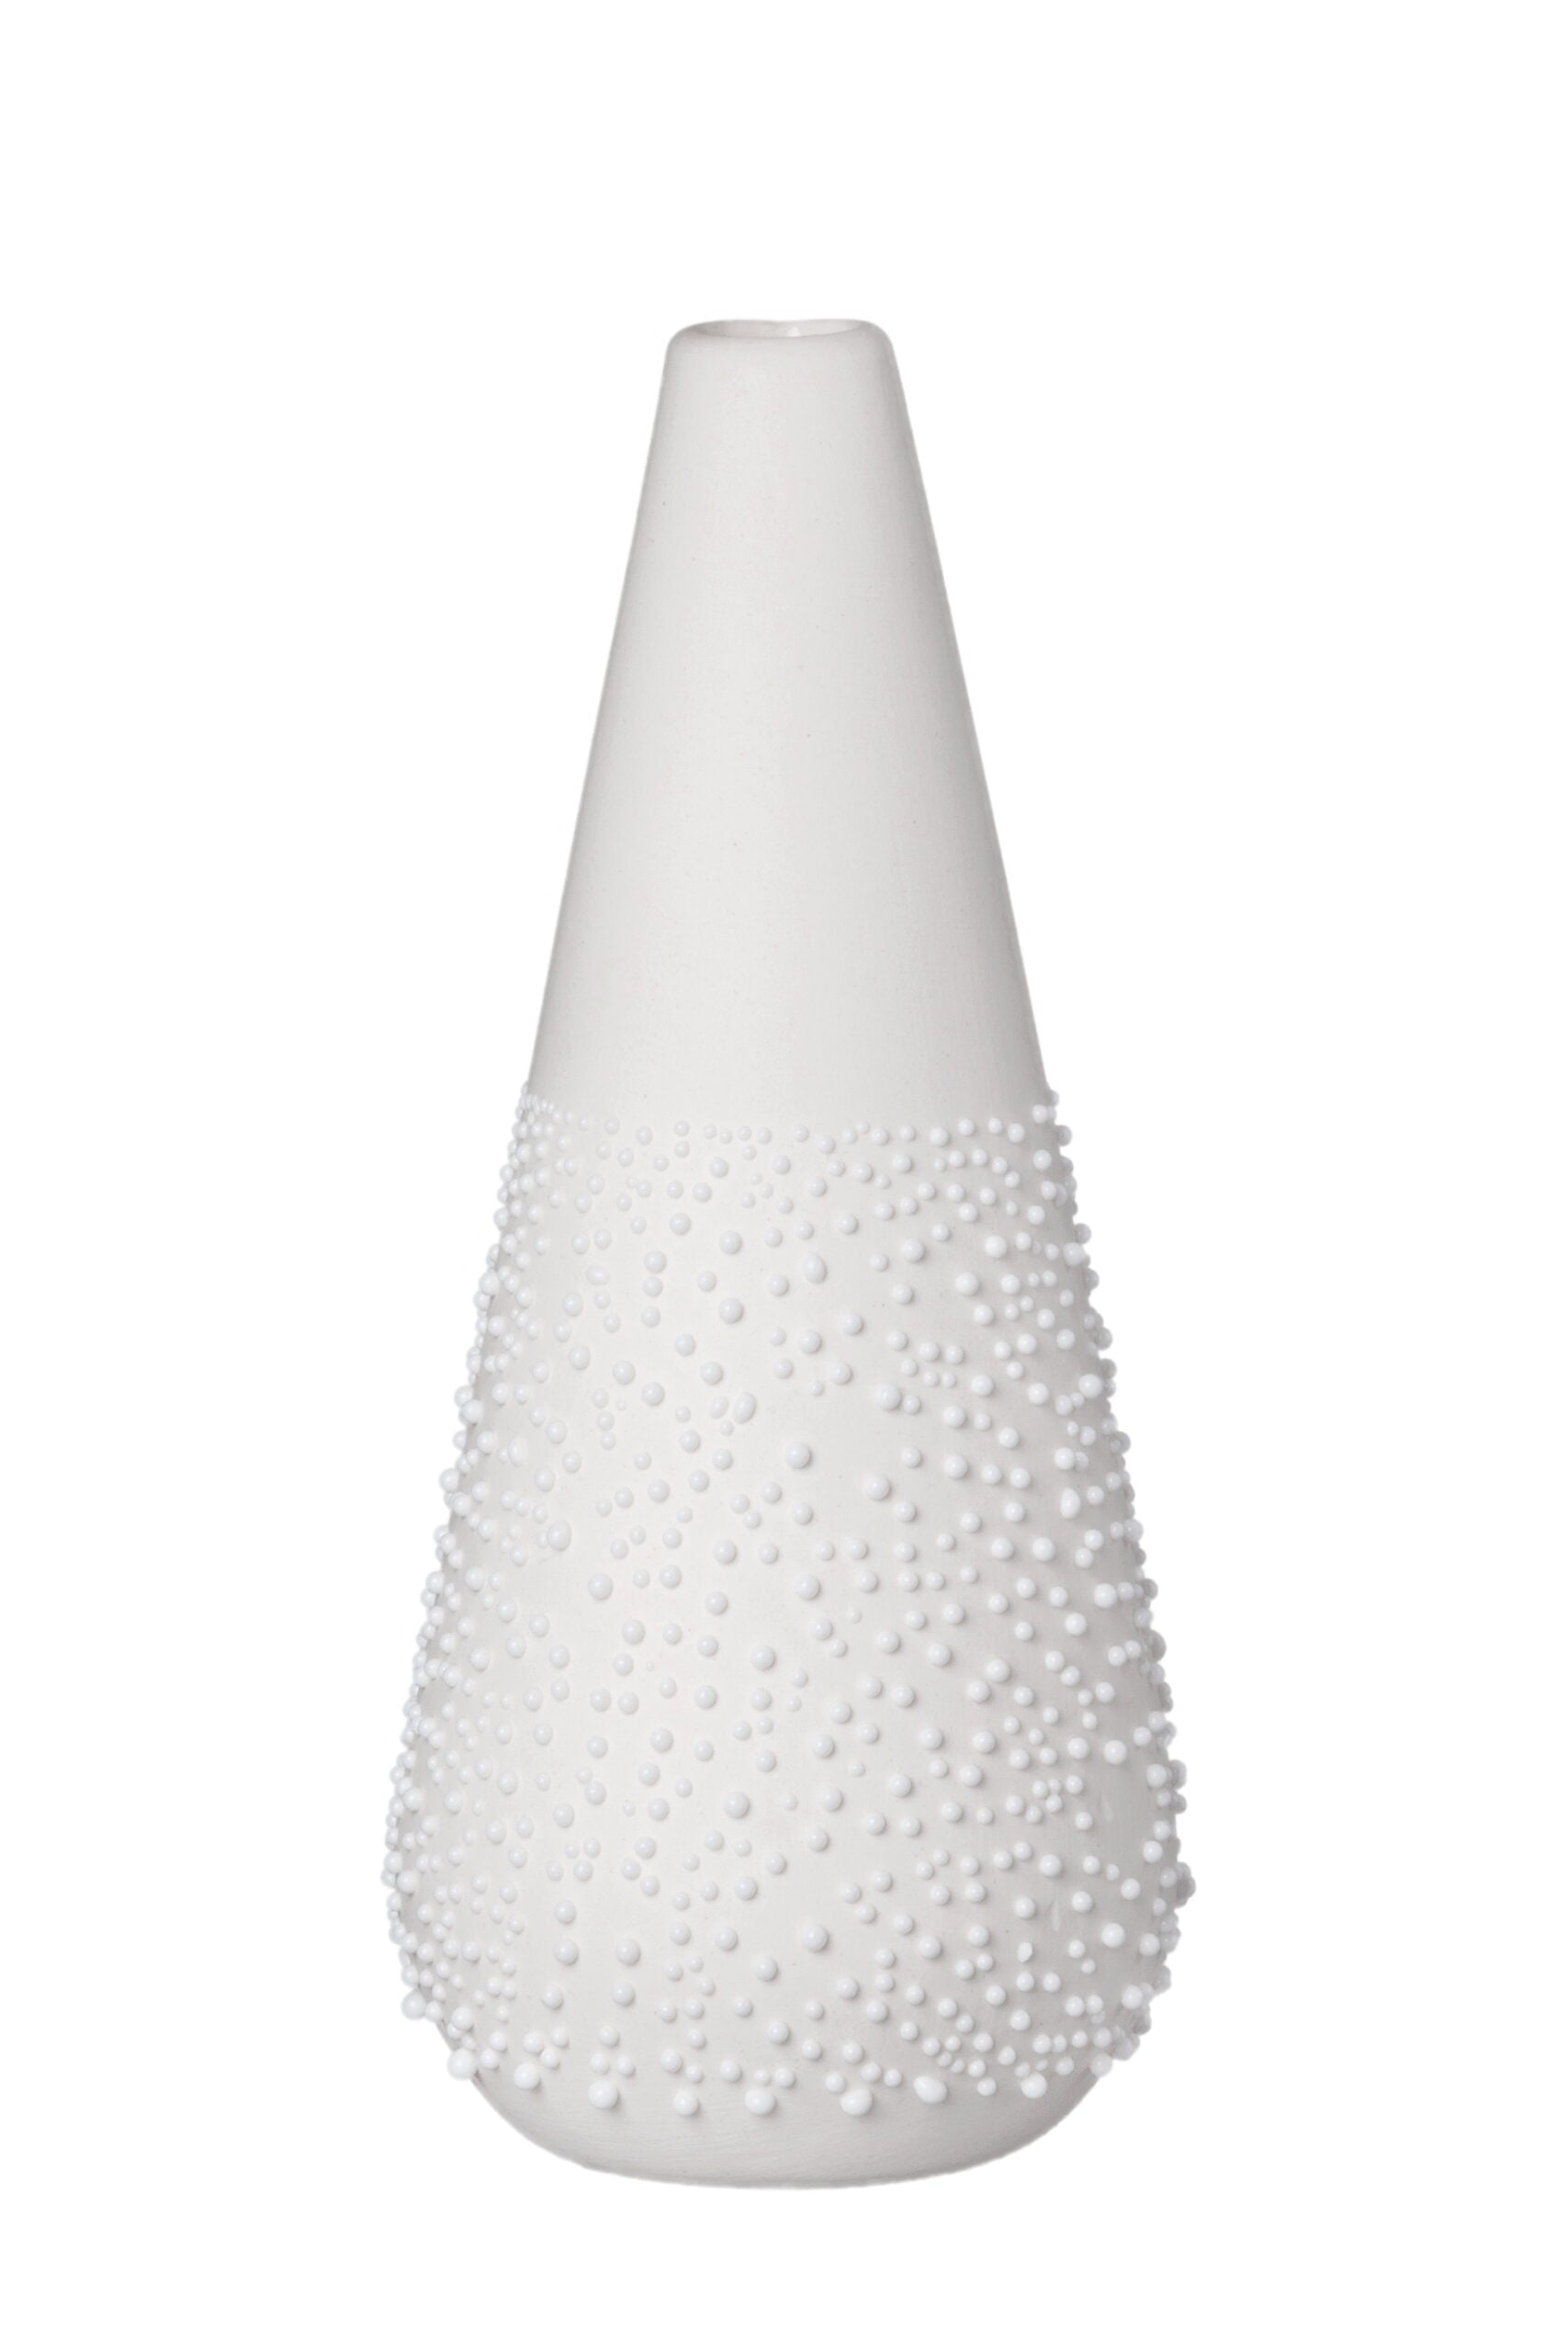 Rader_Pearl Vase Design 5_14381_White_31102021